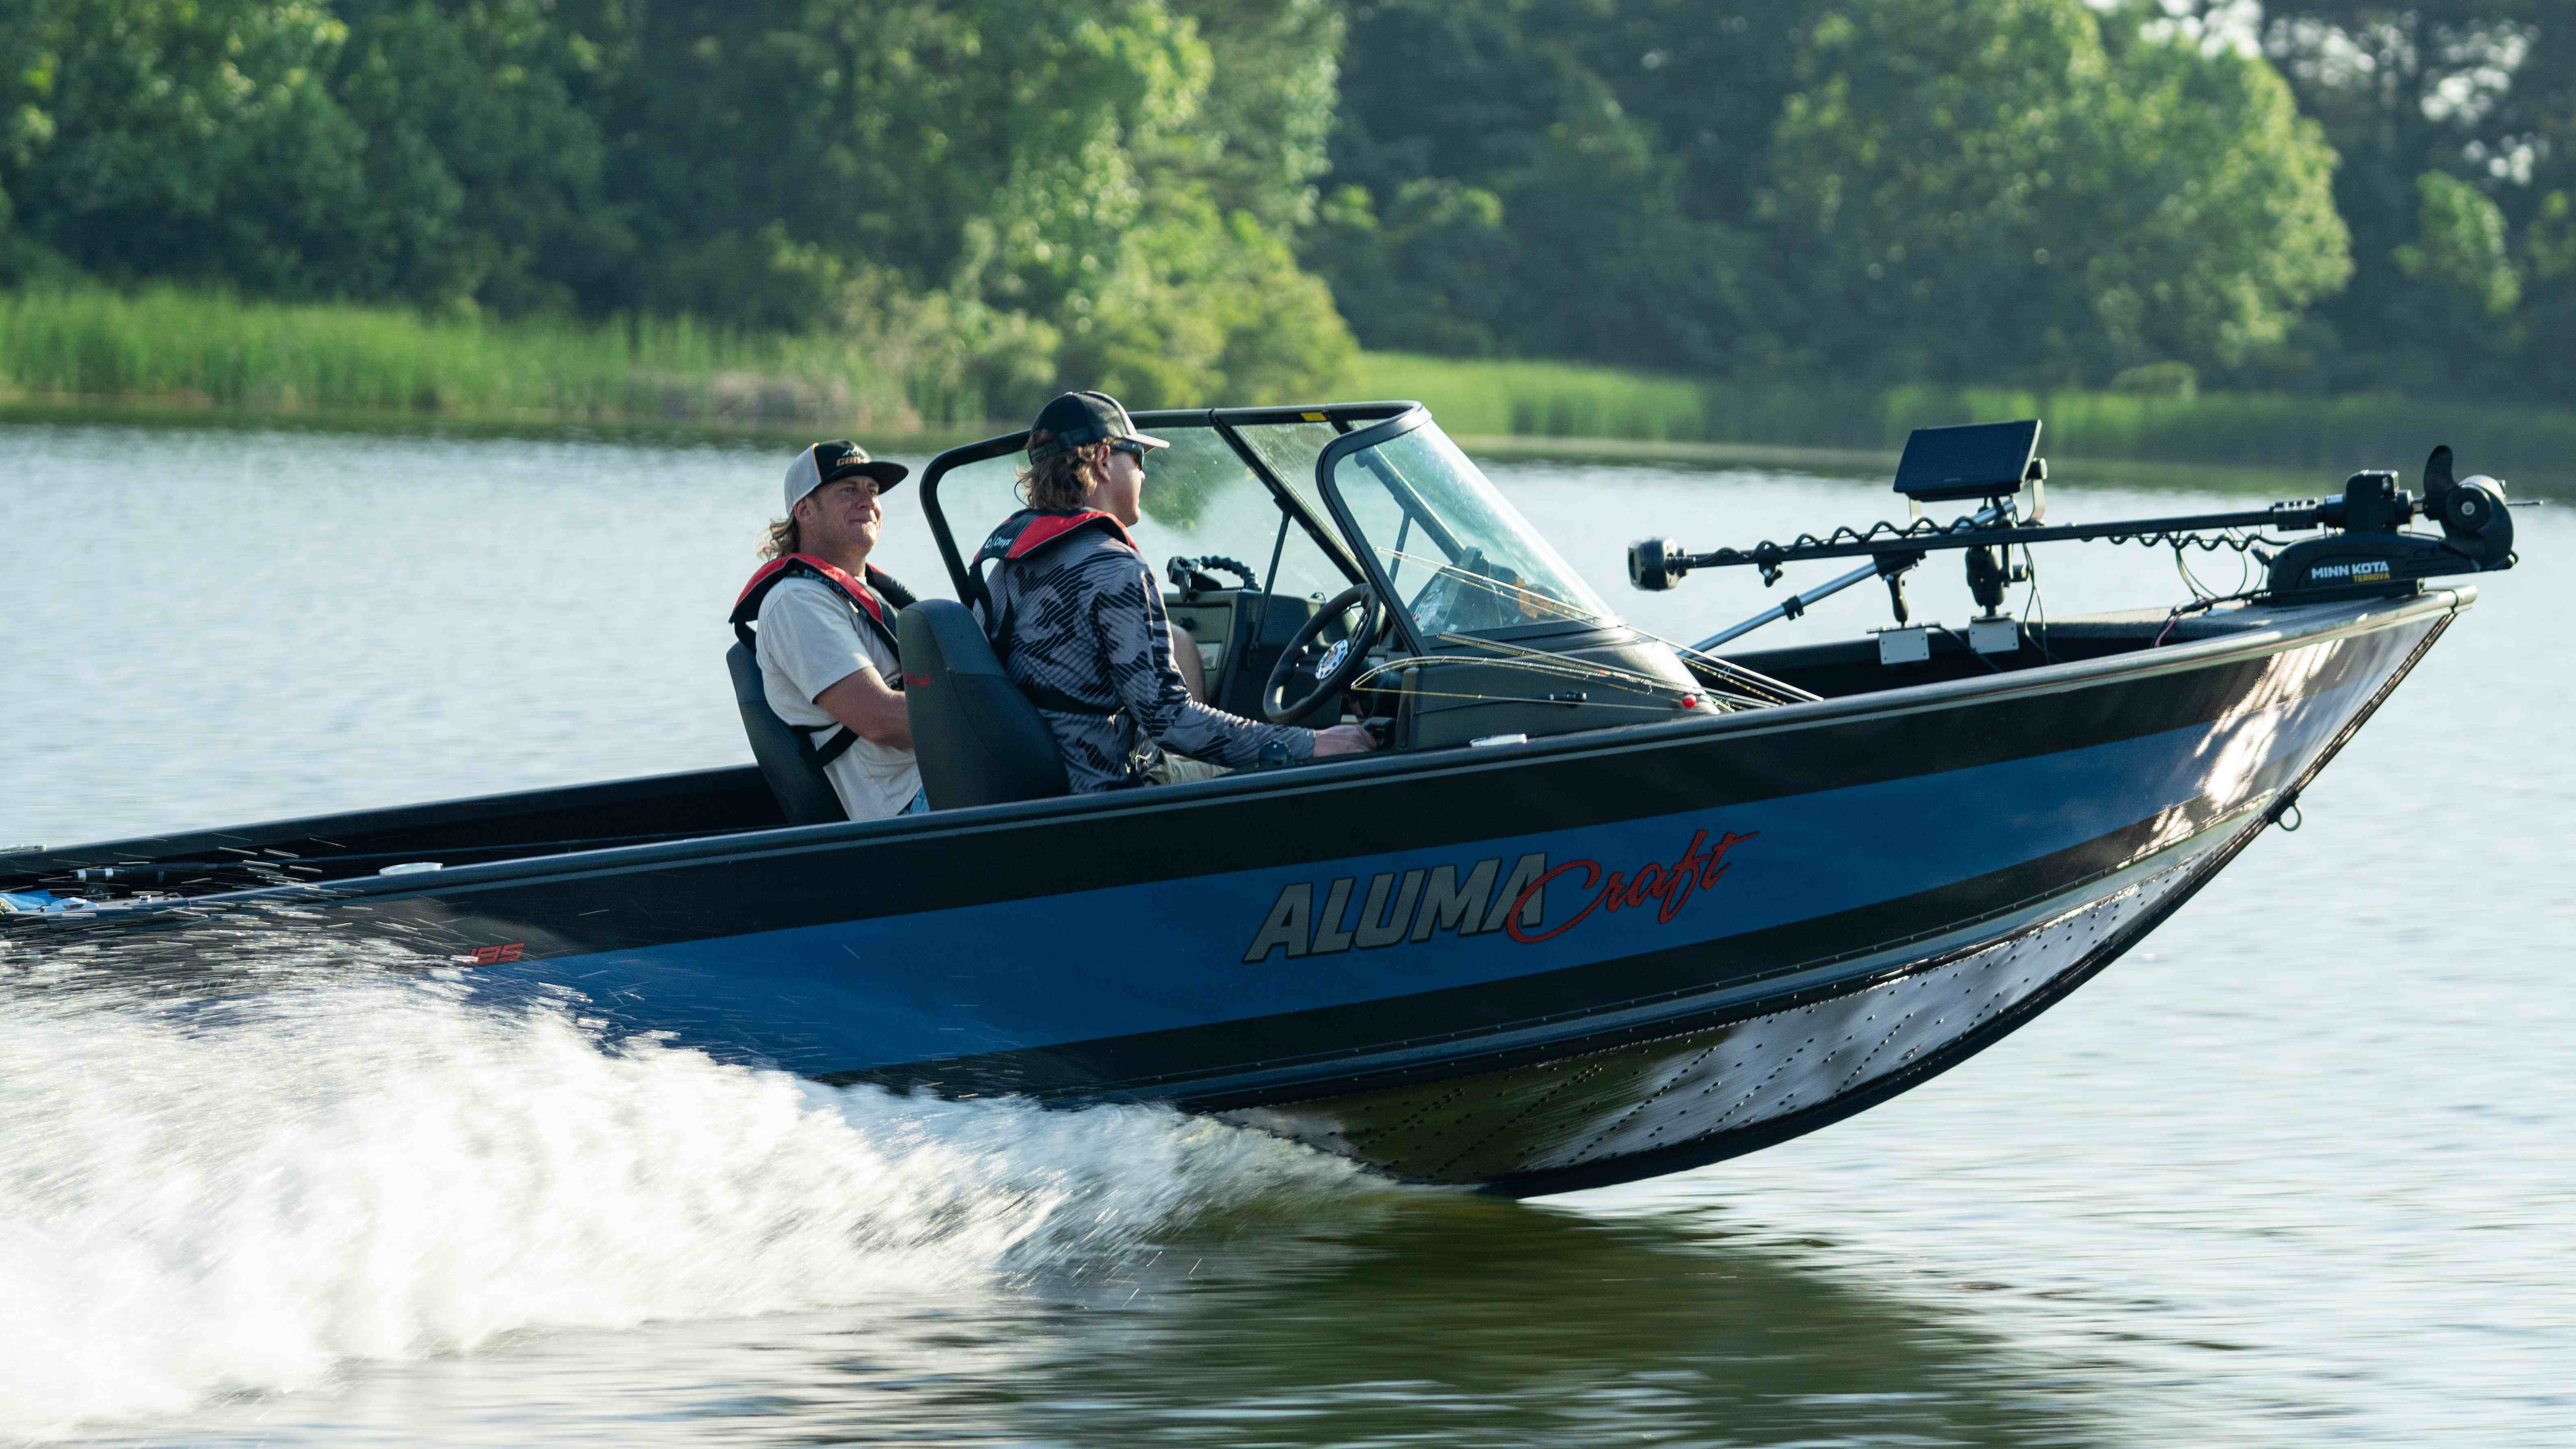 Jay Siemens and Dustin Jones Driving Alumacraft Boat in Open Water